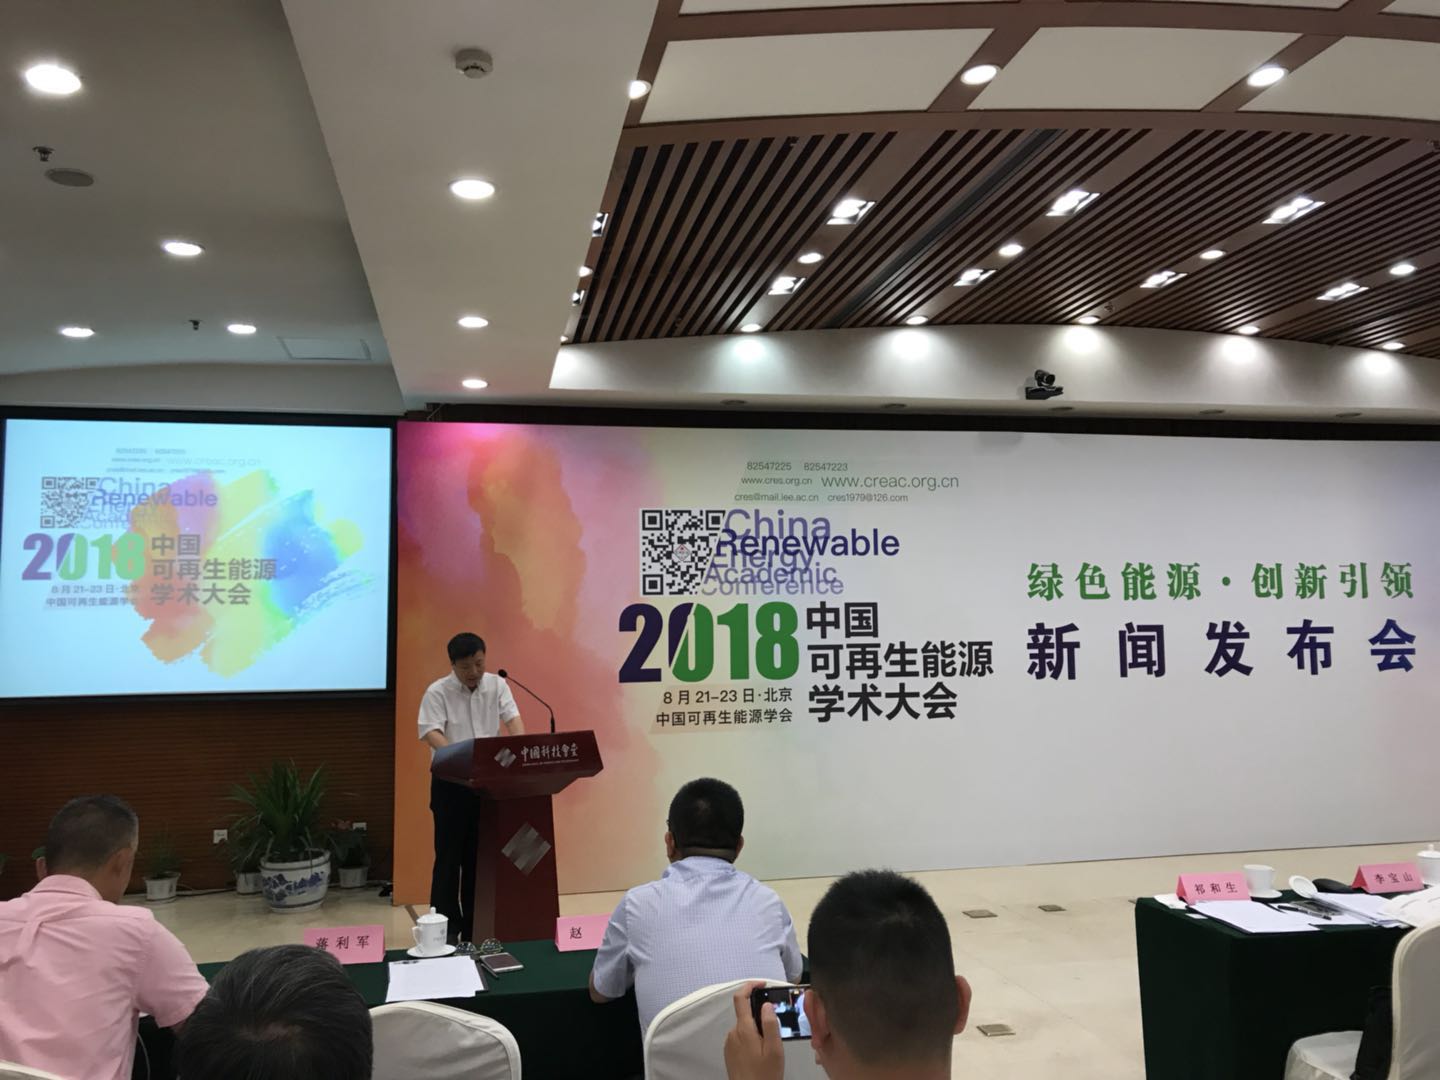 2018中国可再生能源学术大会将于8月召开